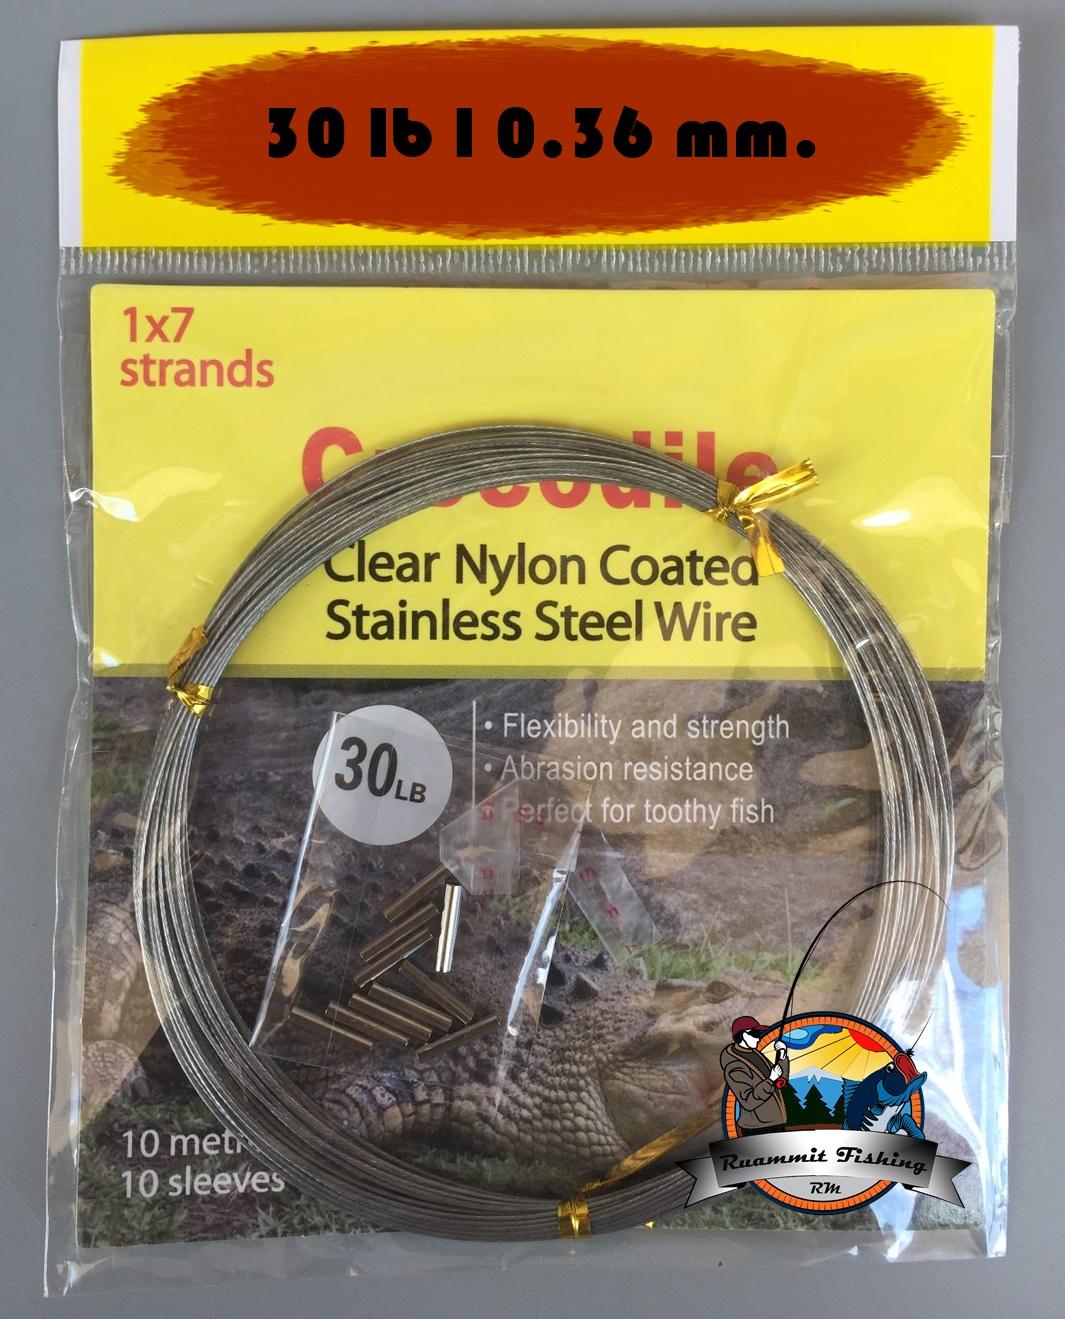 สายสลิงจระเข้ Crocodile Clear Nylon Coated Stainless Steel Wire 1x7 strands